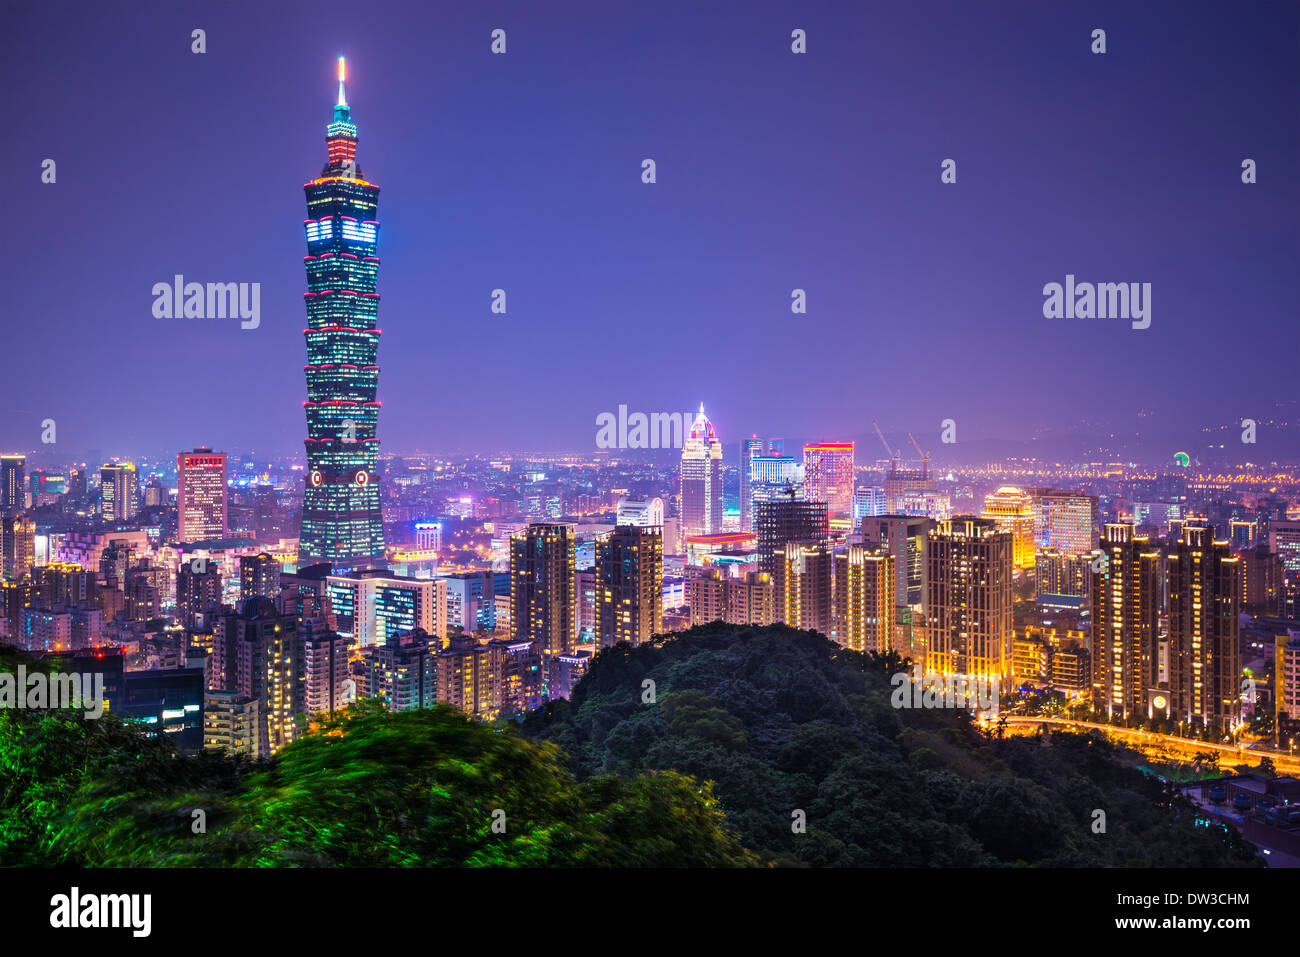 Taipei, Taiwan skyline at night. Stock Photo